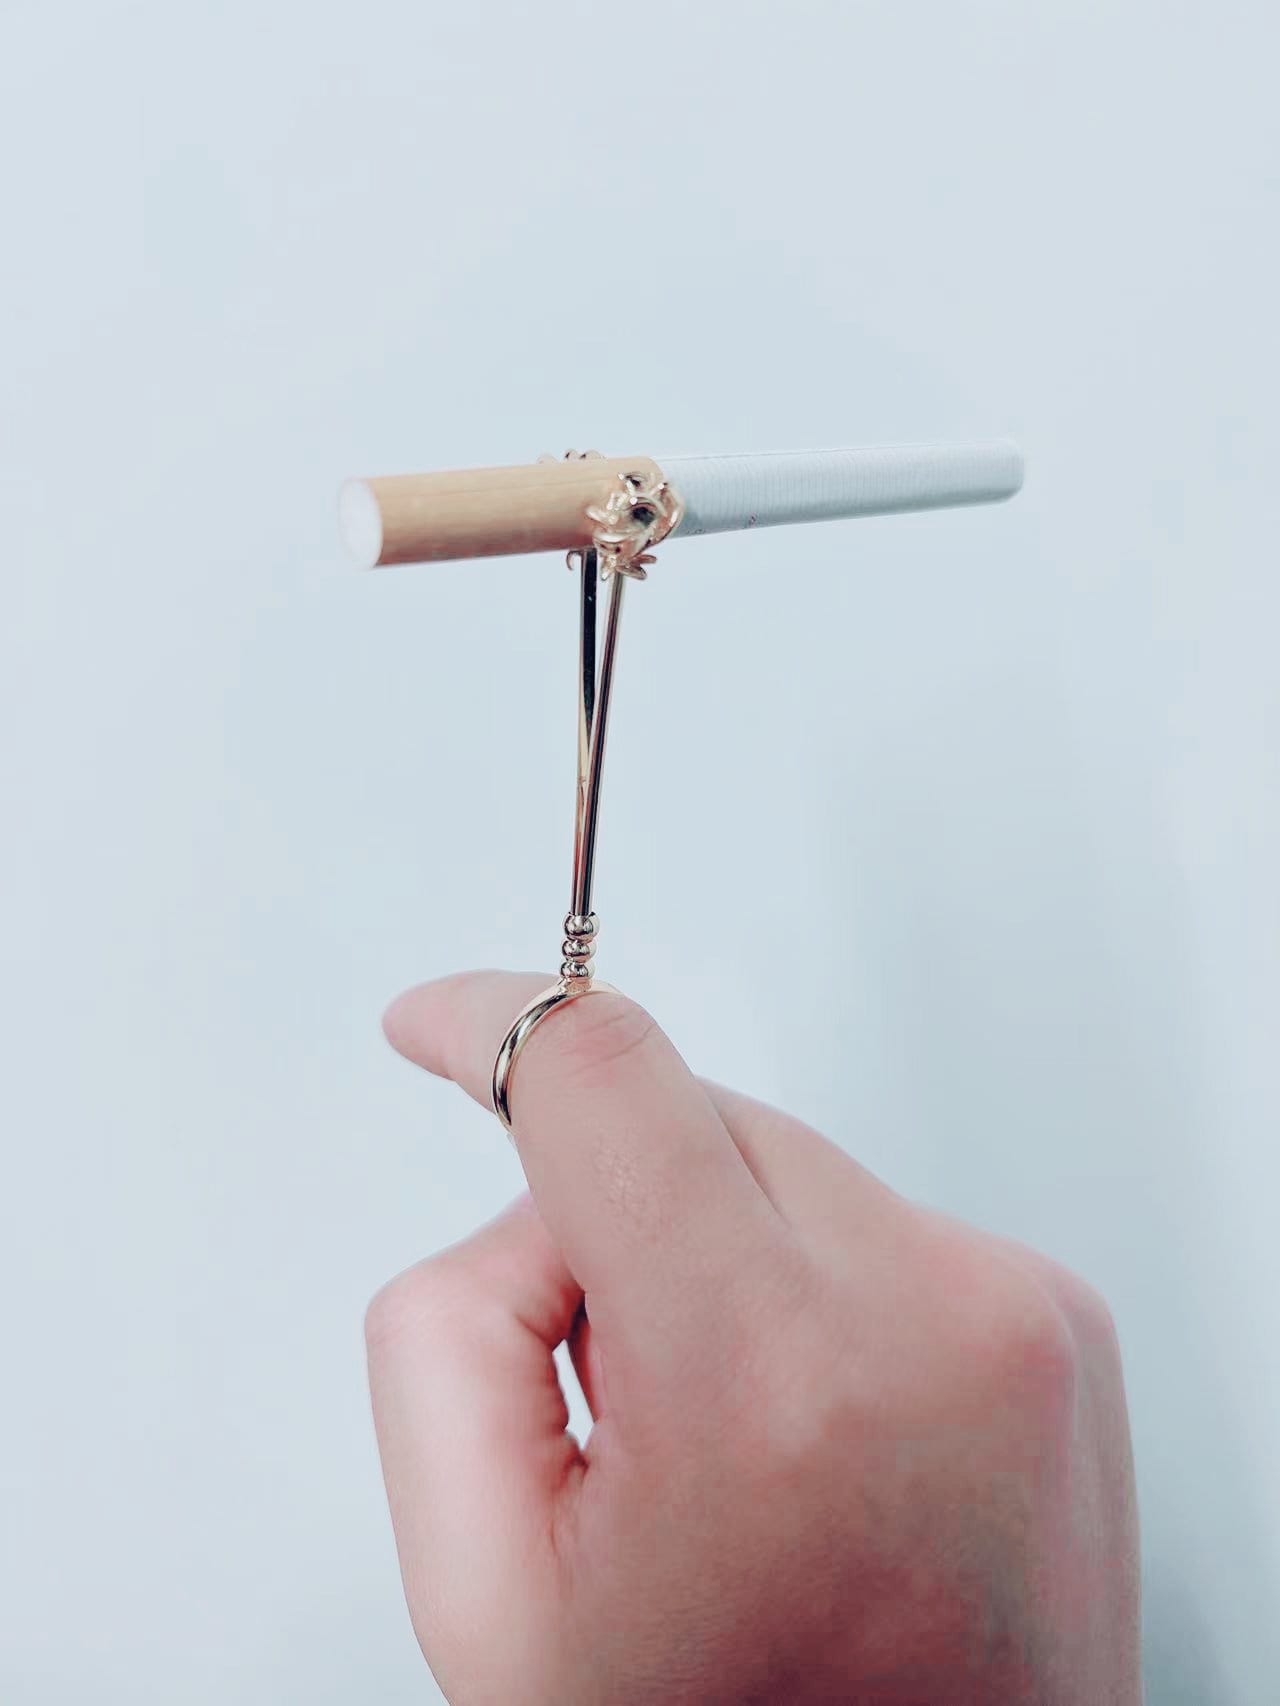 Blunt Holder Elegant Bee Cigaret Holder Ring For Women Adjustable Handmade  Free Your Hands Smoker Blunt